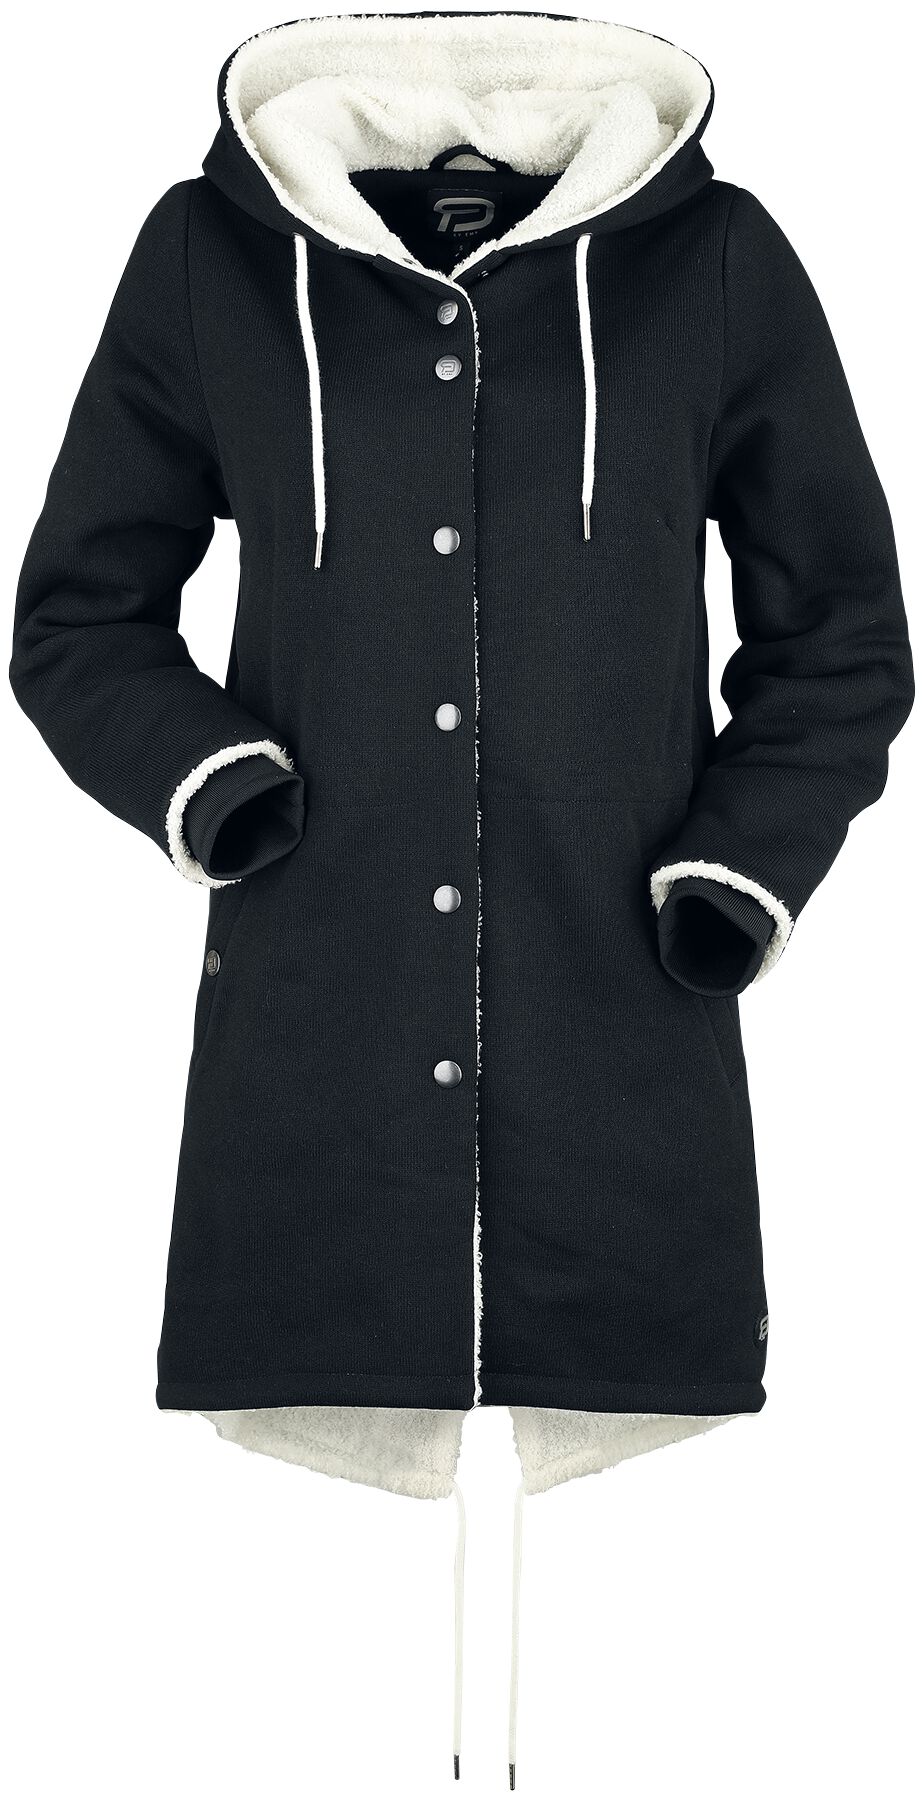 Manteaux de RED by EMP - Sweatmantel mit flauschigem Futter - S à XL - pour Femme - noir/blanc